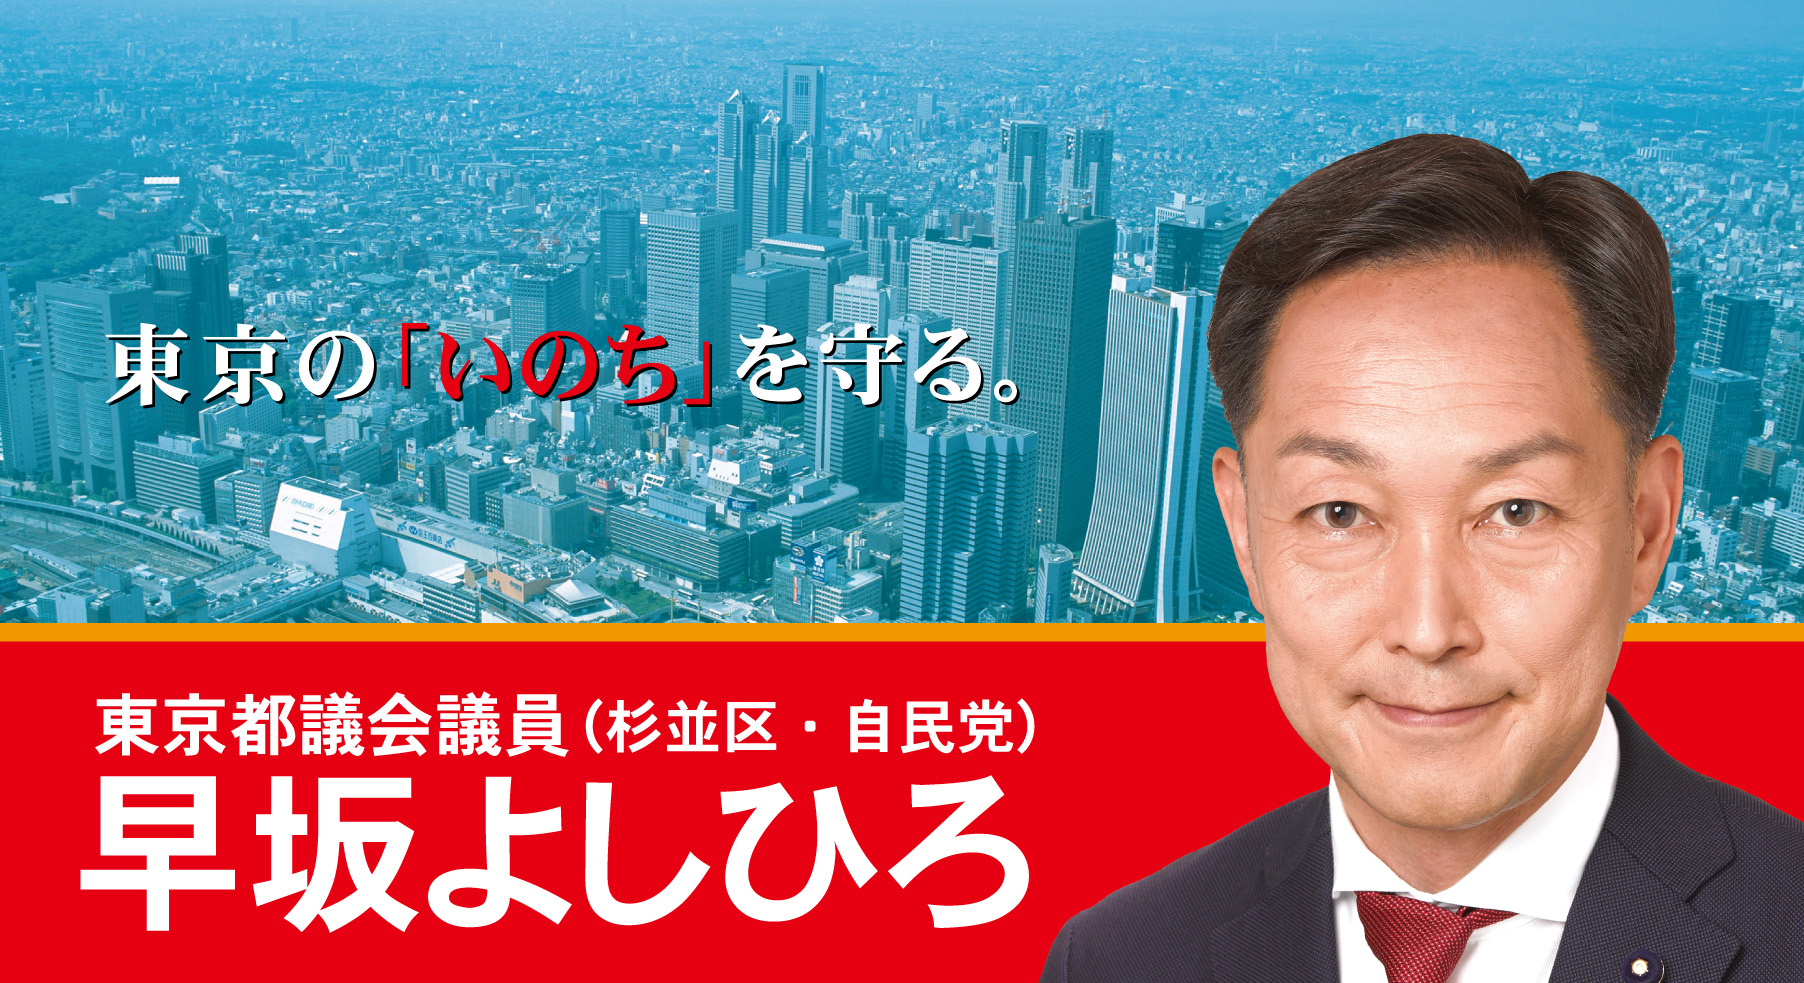 東京都議会議員 早坂よしひろ 杉並区 自民党 Official Website